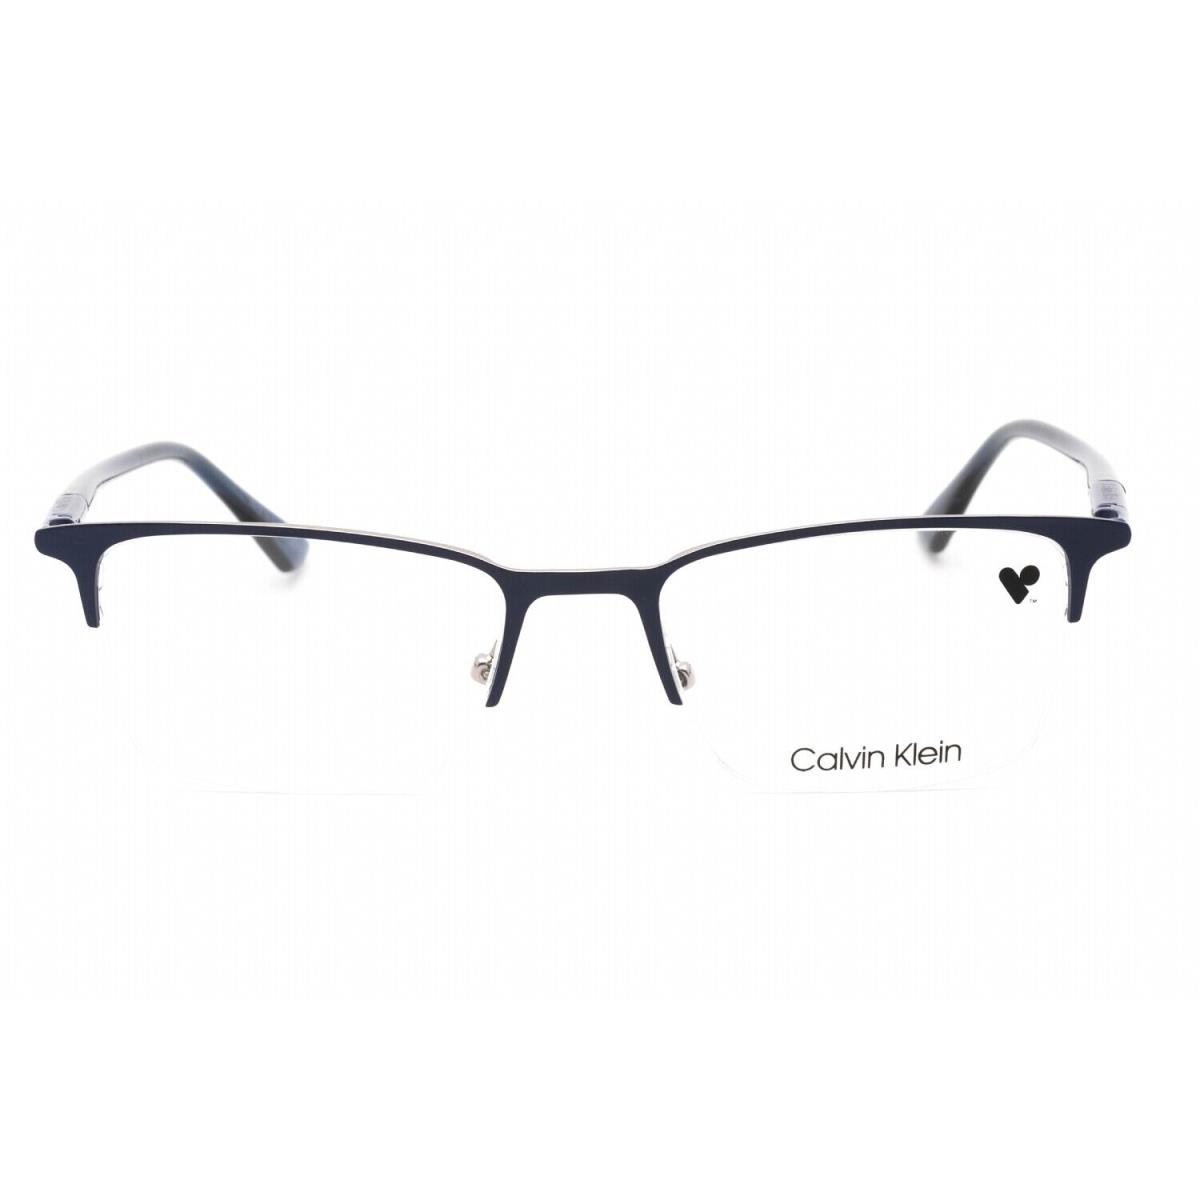 Calvin Klein CK22118 438 Eyeglasses Blue Frame 52 Mm